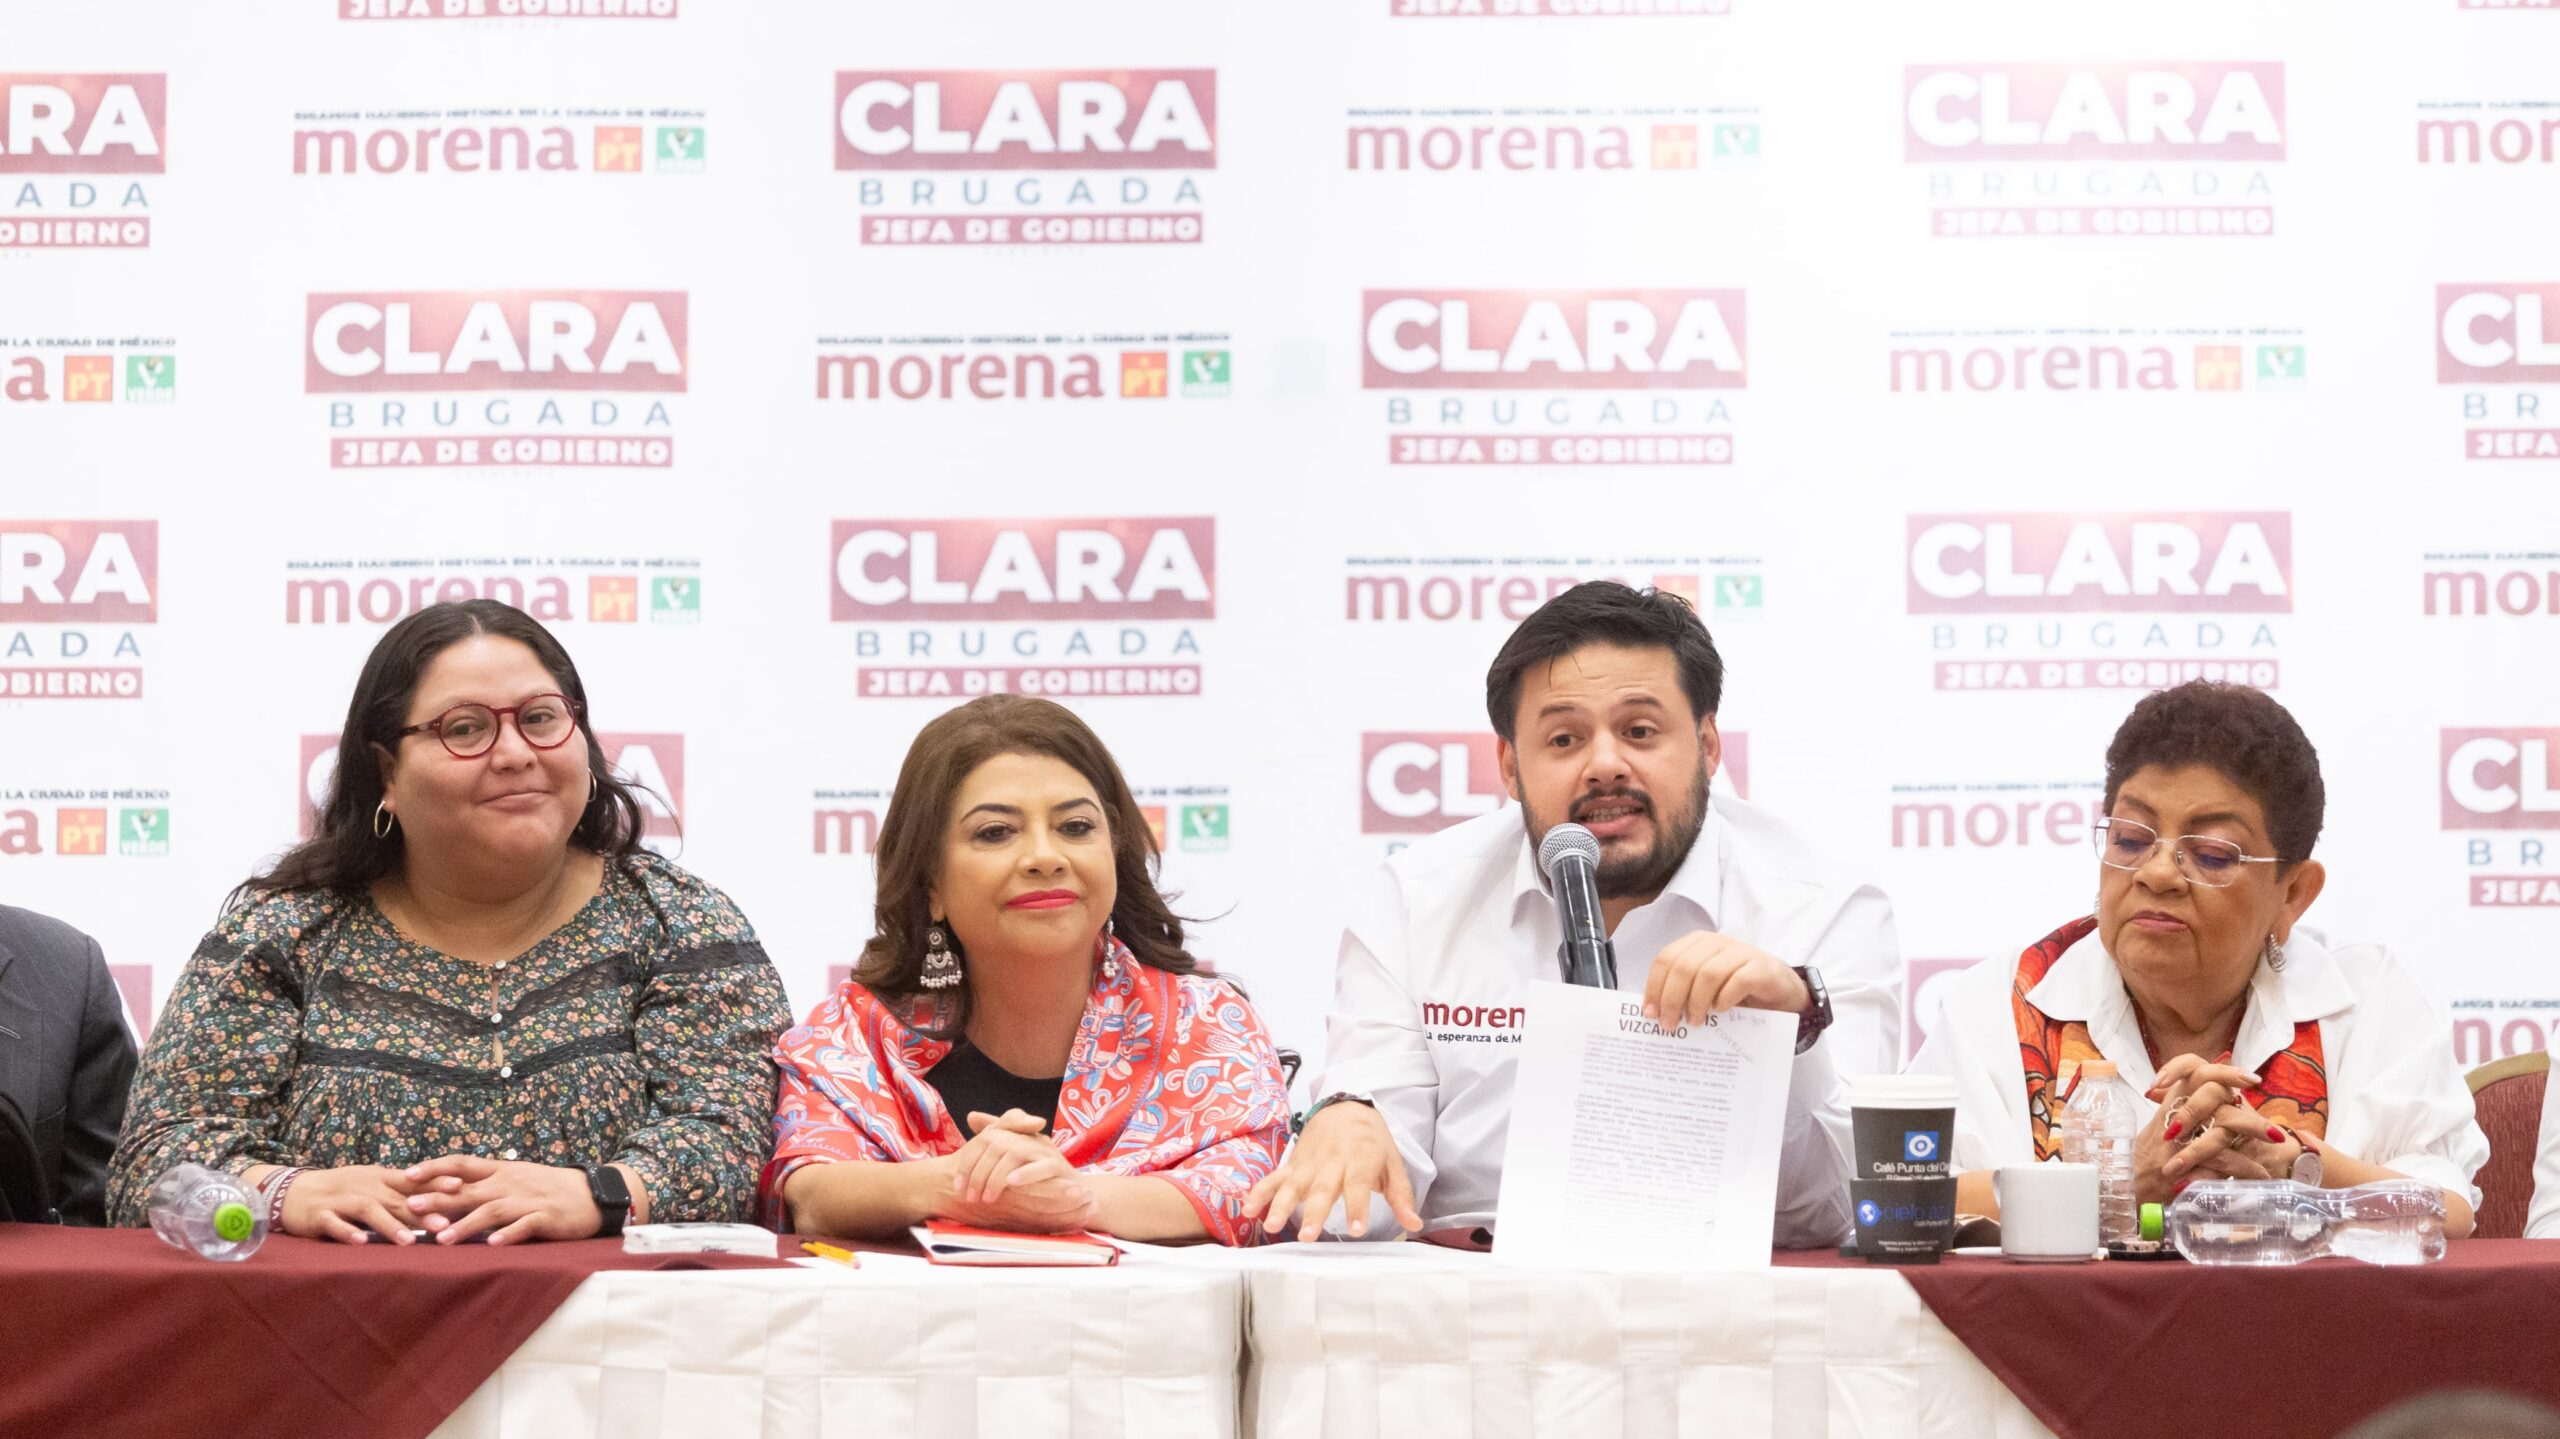 Medidas cautelares del INE, en contra de la democracia: Clara Brugada